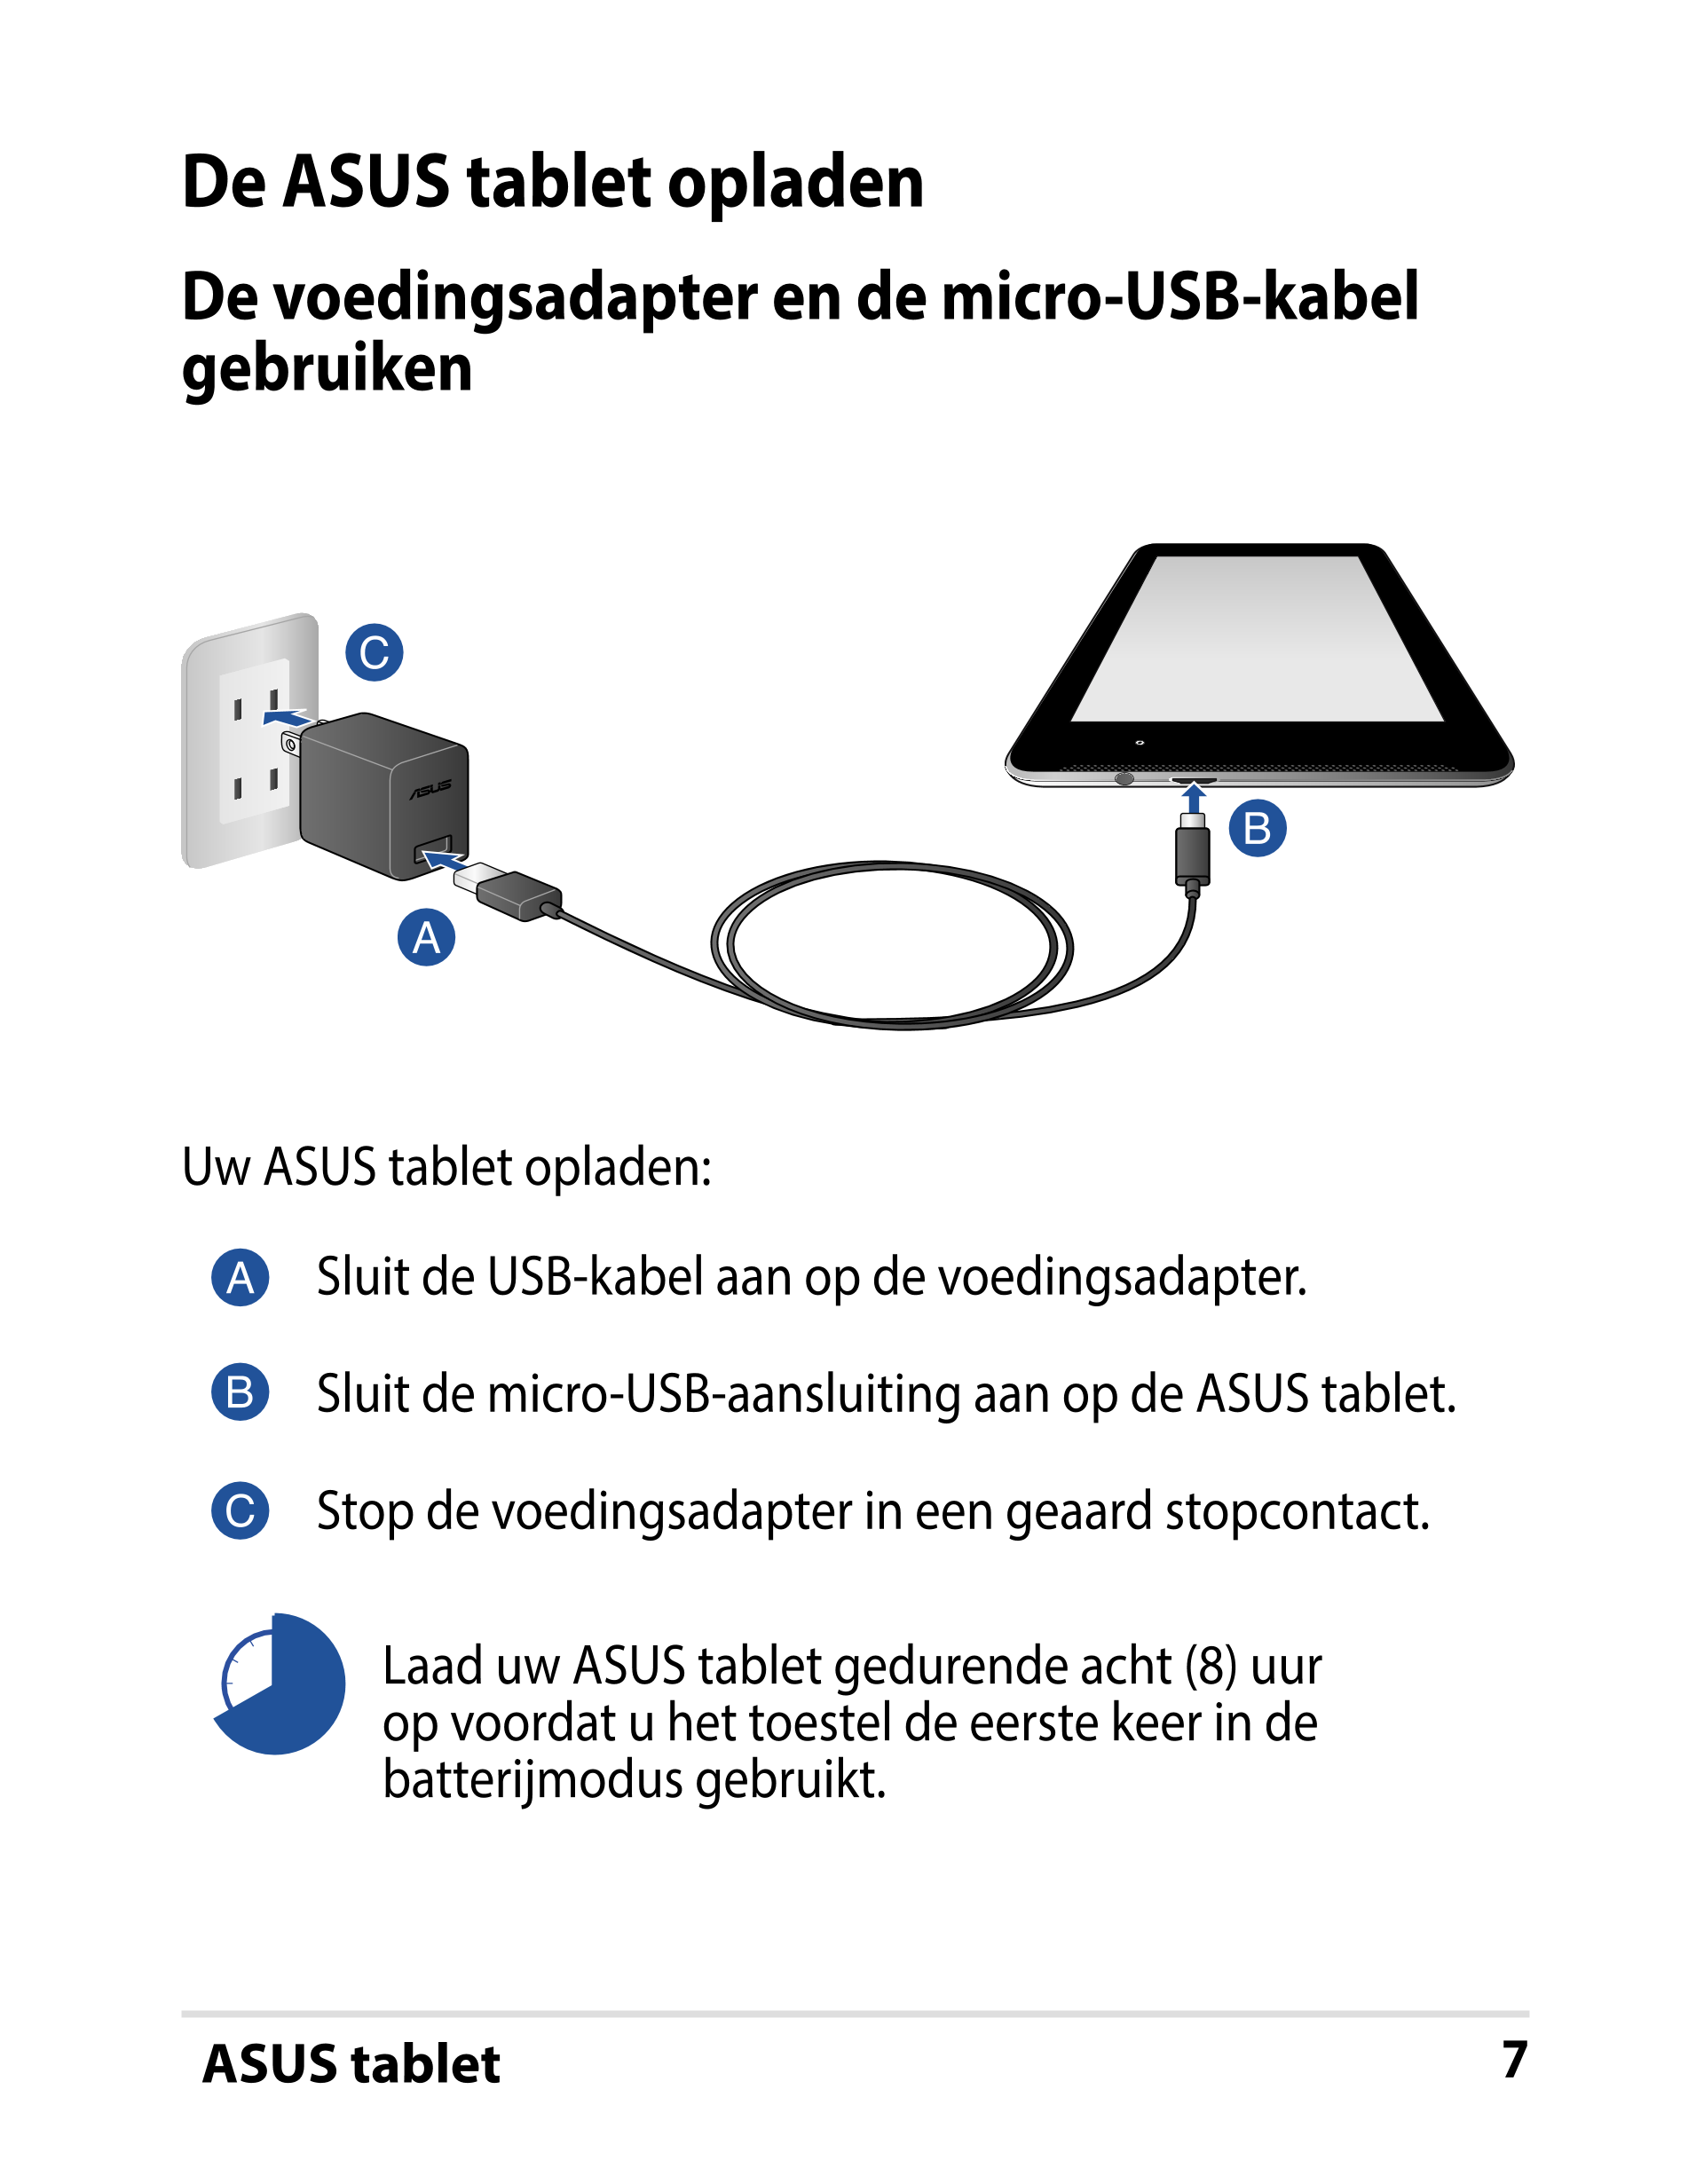 De ASUS tablet opladen
De voedingsadapter en de micro-USB-kabel 
gebruiken
Uw ASUS tablet opladen:
Sluit de USB-kabel aan op de 